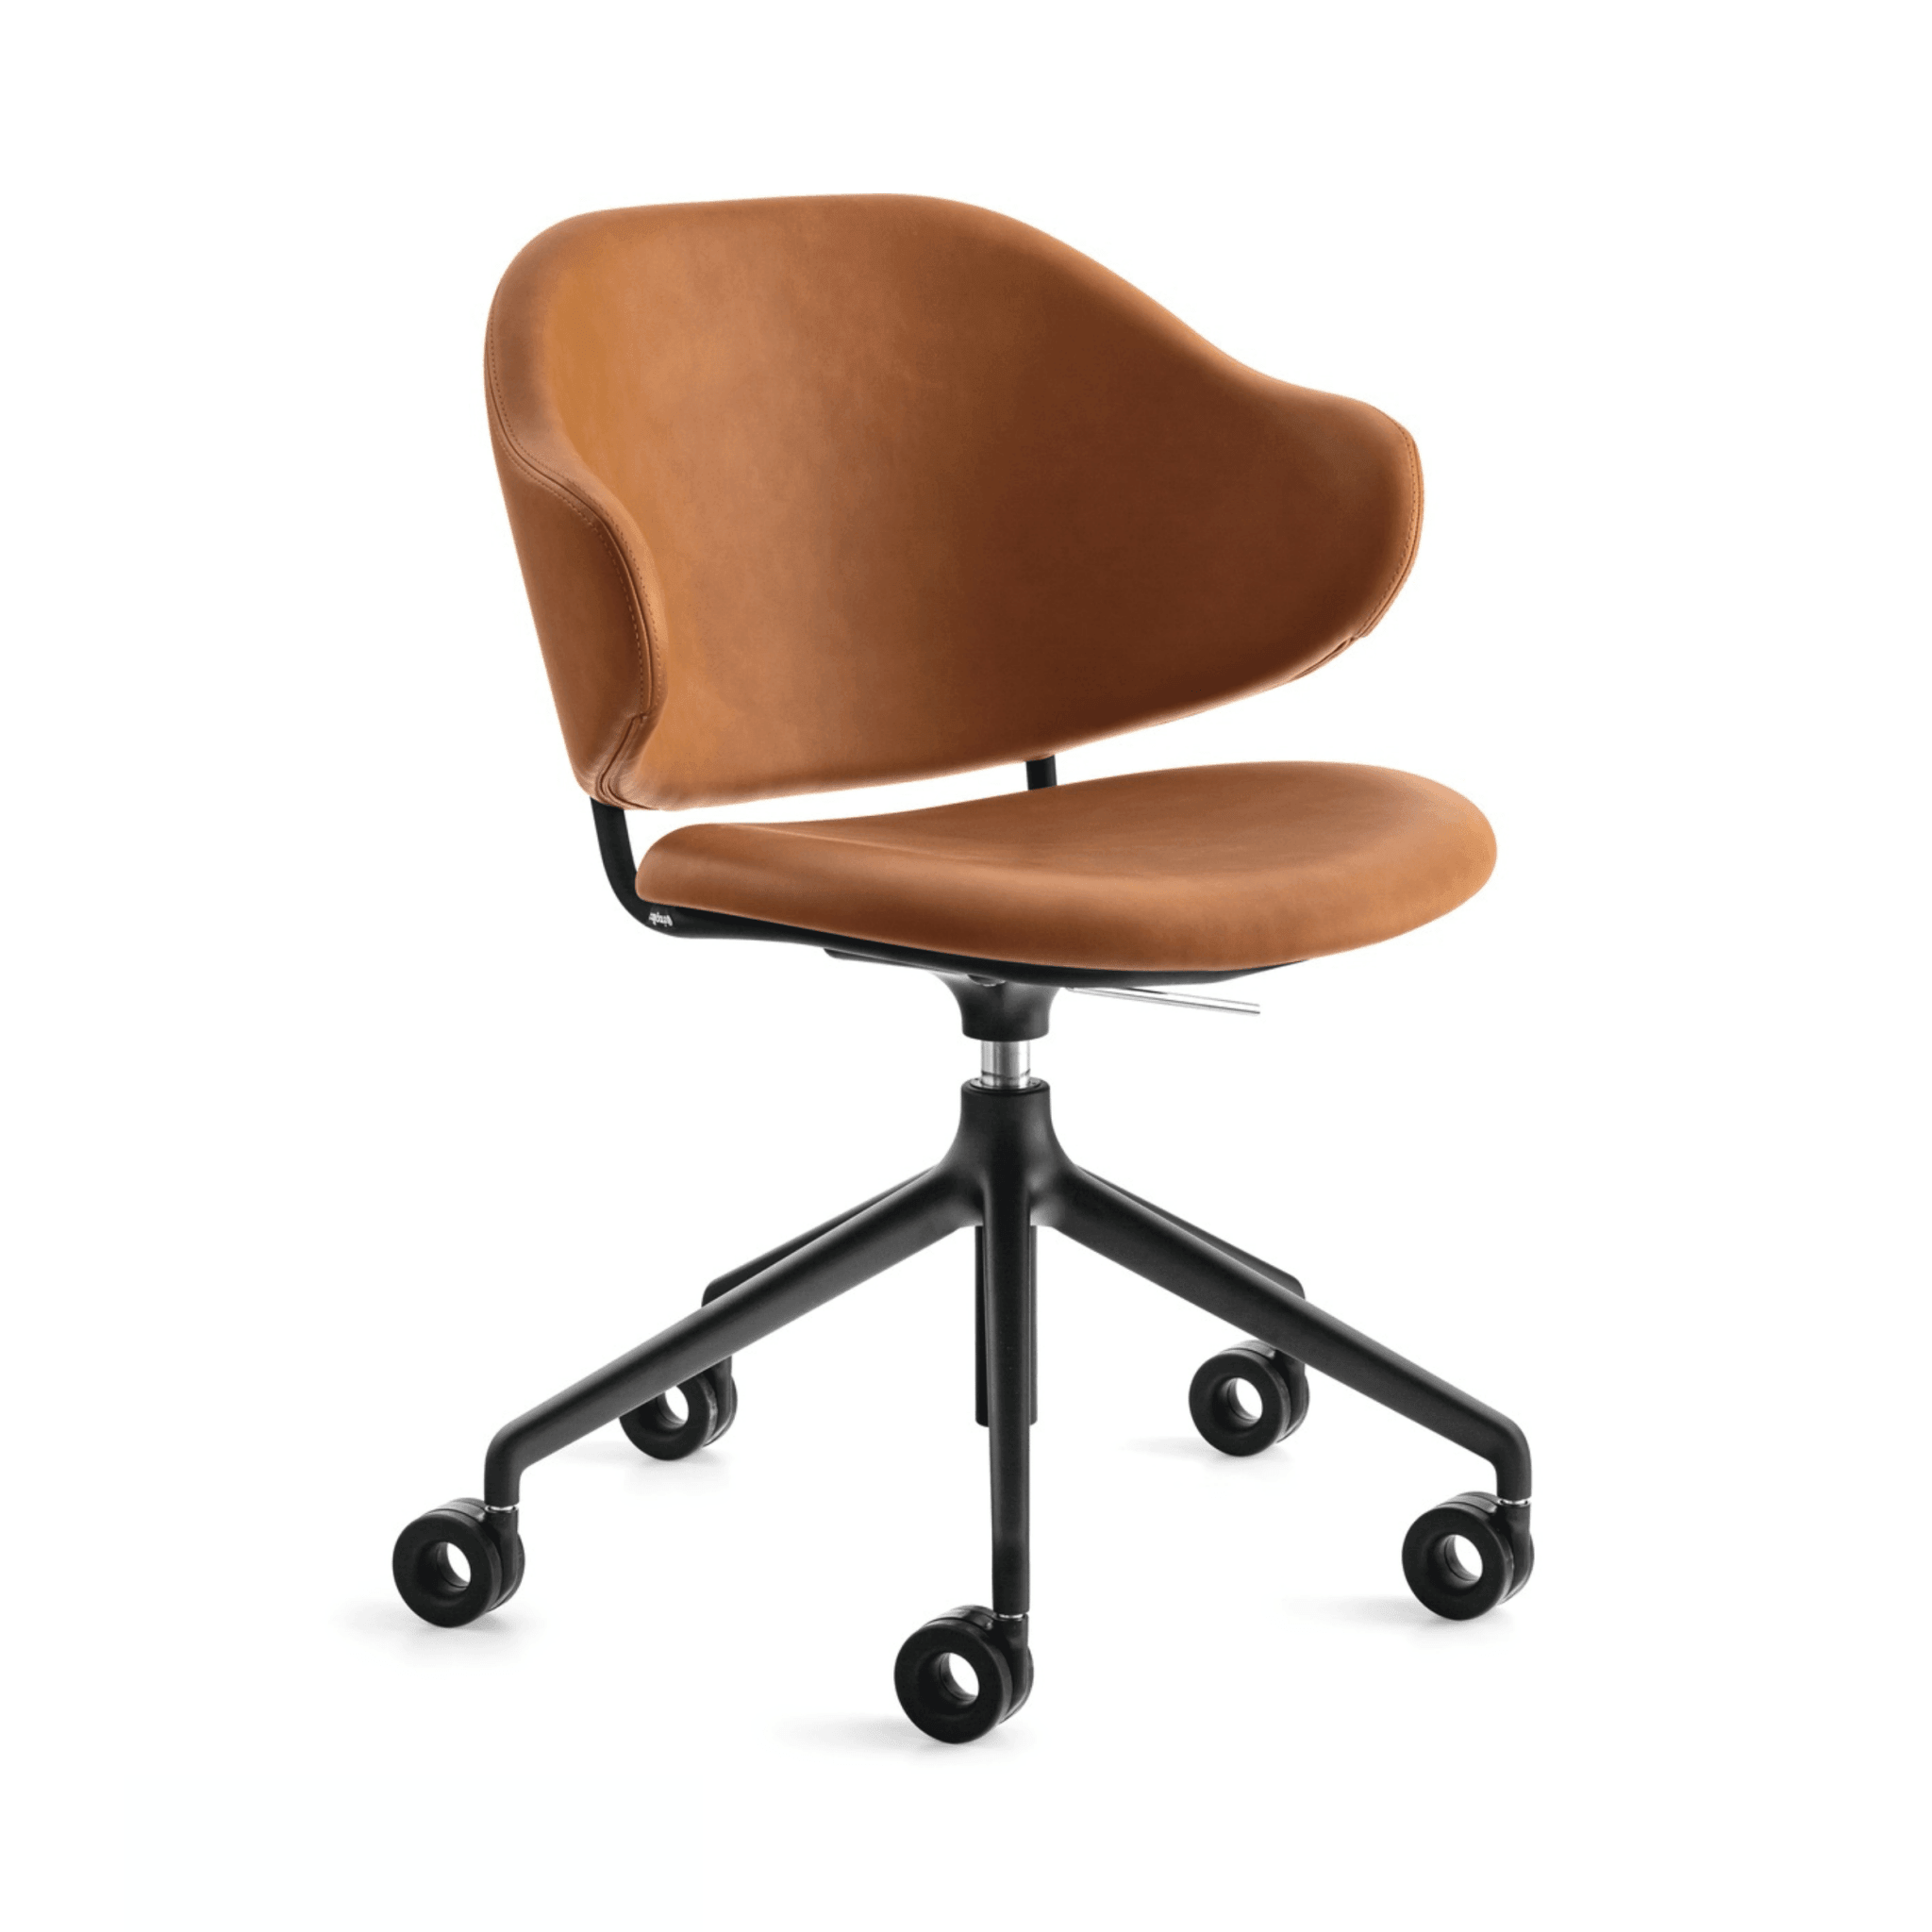 Krzesło biurowe HOLLY koniakowa ekoskóra Calligaris matowa czerń   Eye on Design